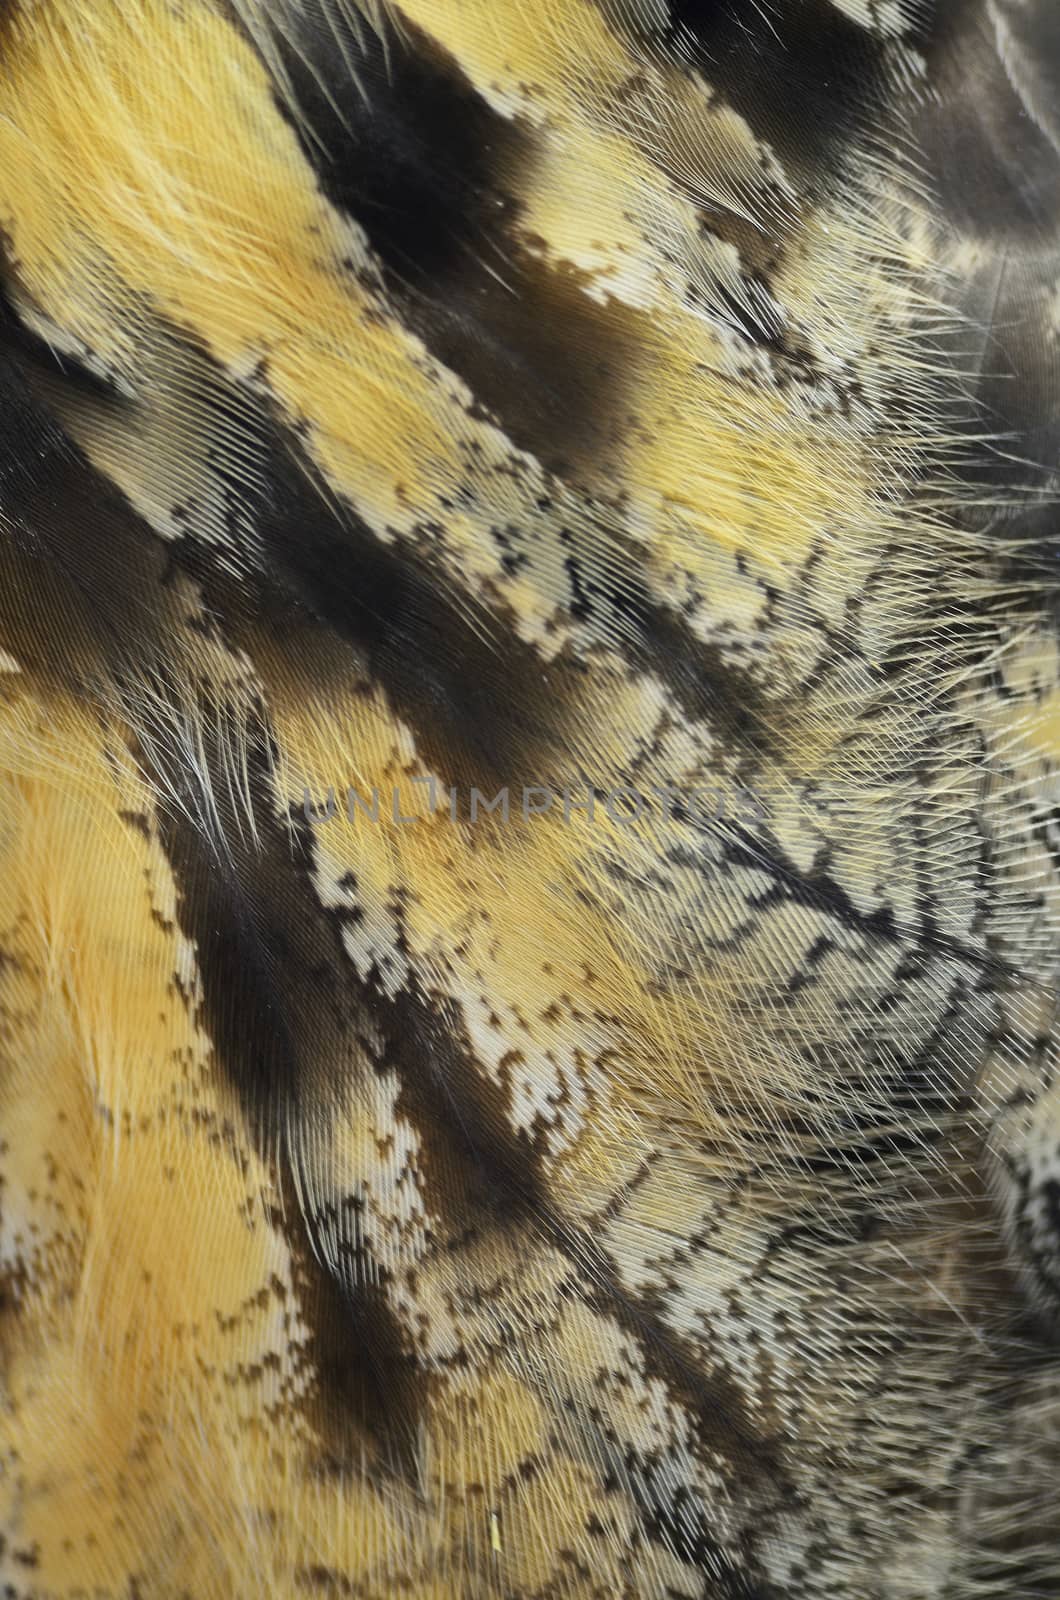 Closeup Eurasian Eagle Owl feathers